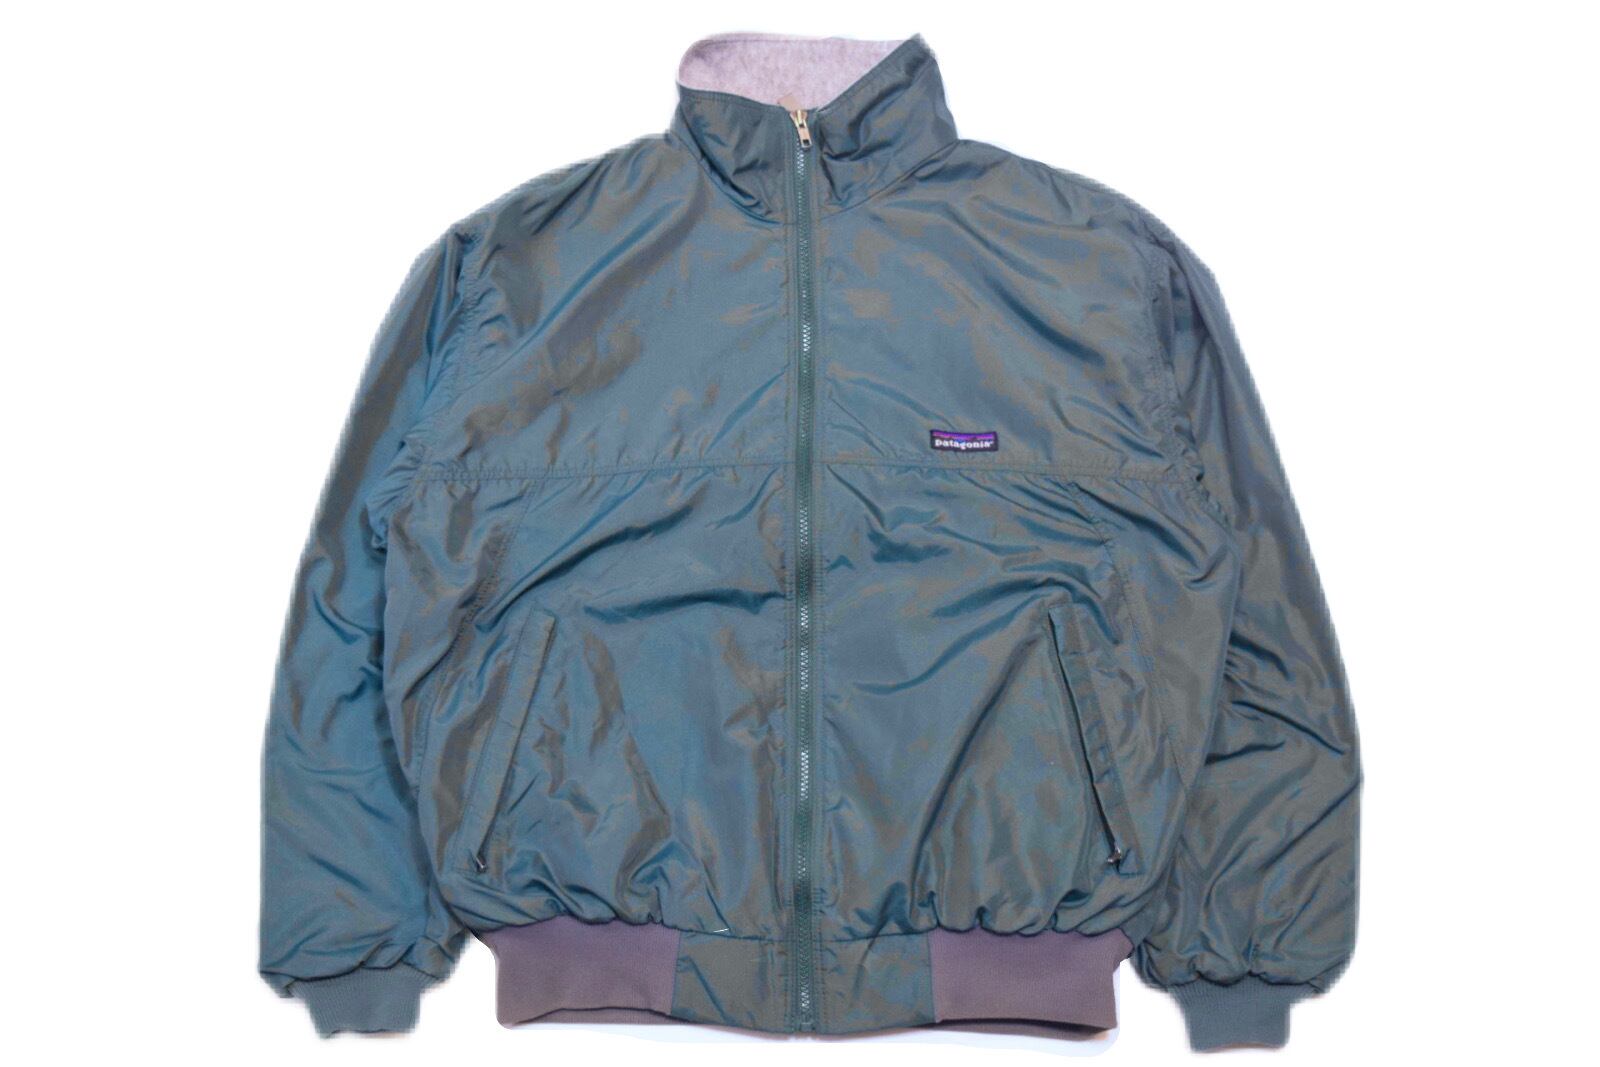 USED 90s patagonia Shelled capilene jacket -Medium 01688